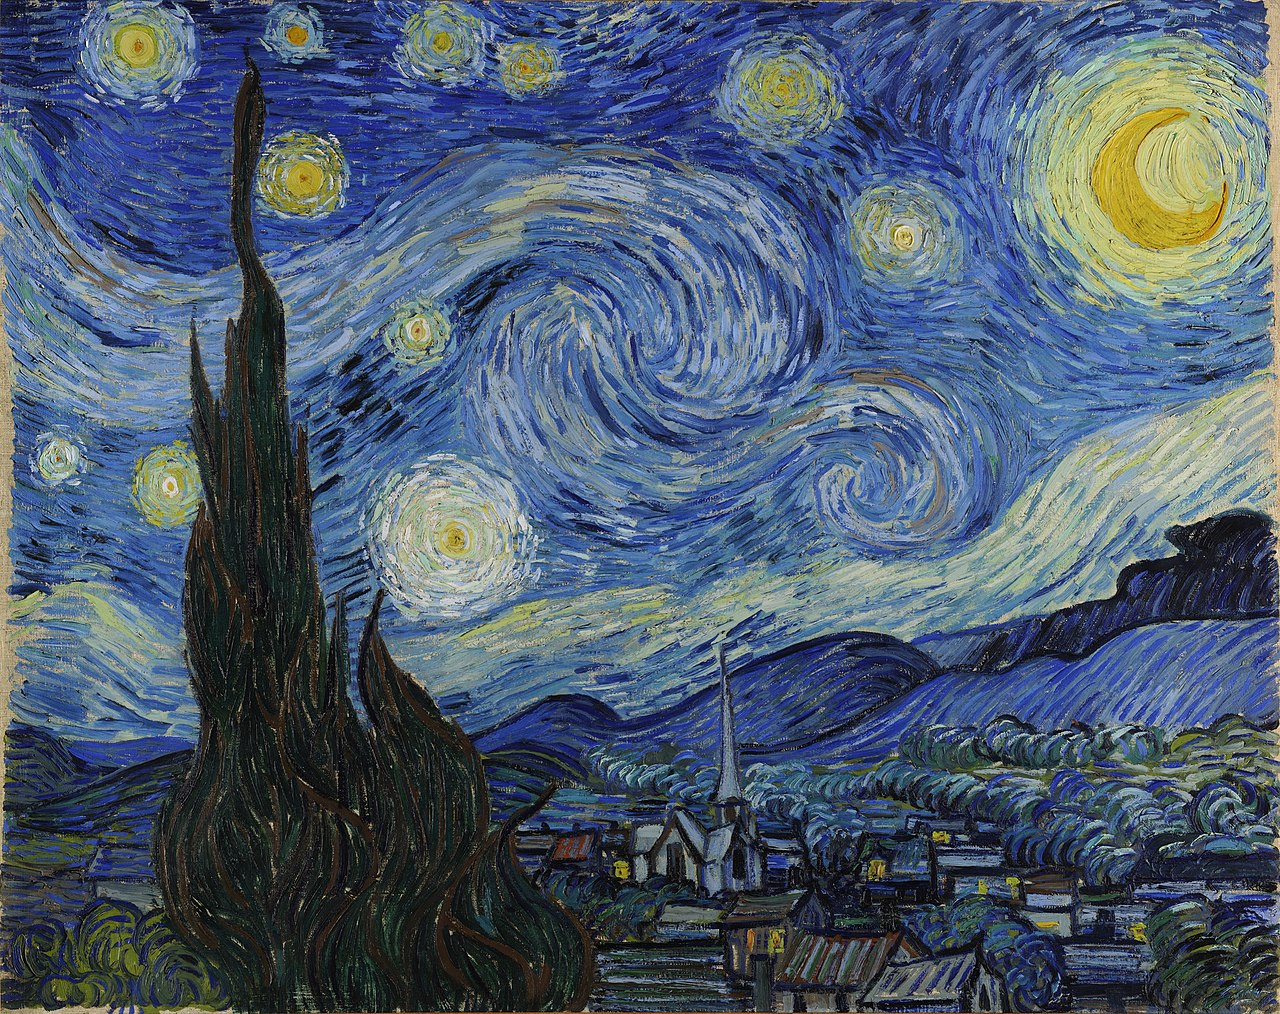 La Nuit étoilée by Vincent van Gogh - 1889. - 73 x 92 cm Museum of Modern Art